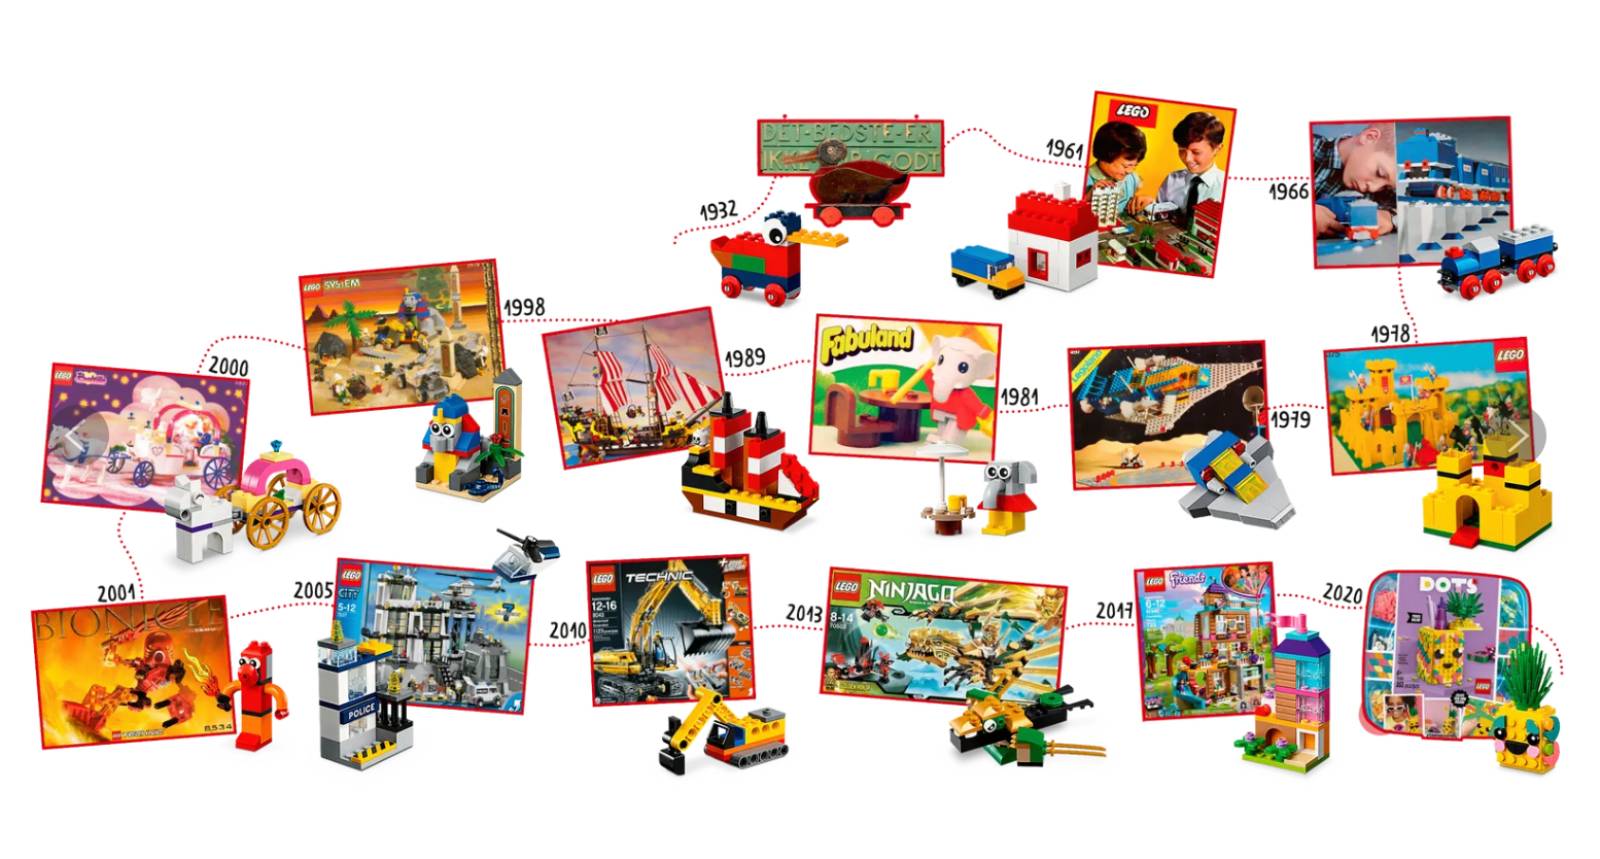 Anniversaire Lego, à vos marque, prêt? Construisez! ⋆ Rêve ta vie